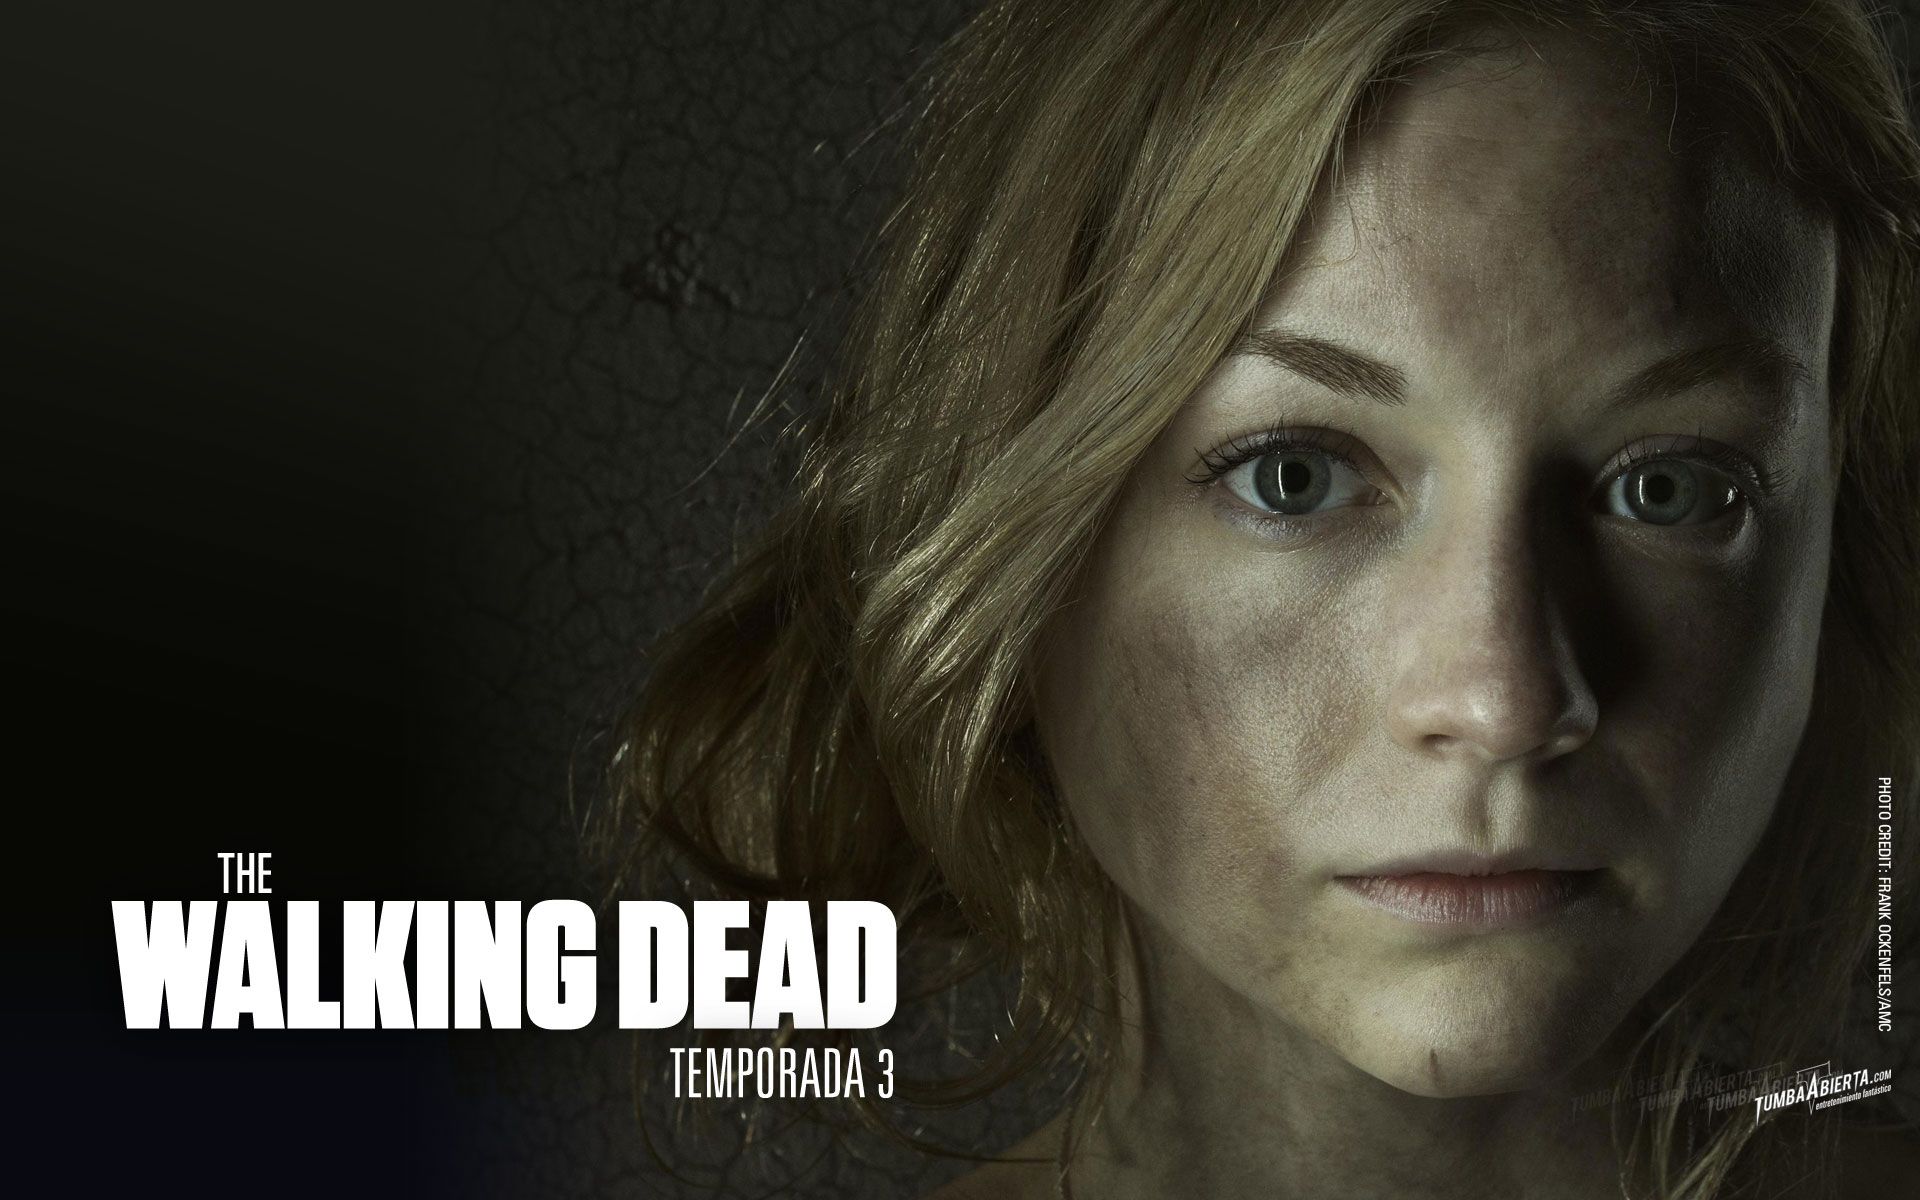 The Walking Dead Beth. The Walking Dead, Dead Picture, Walking Dead Picture